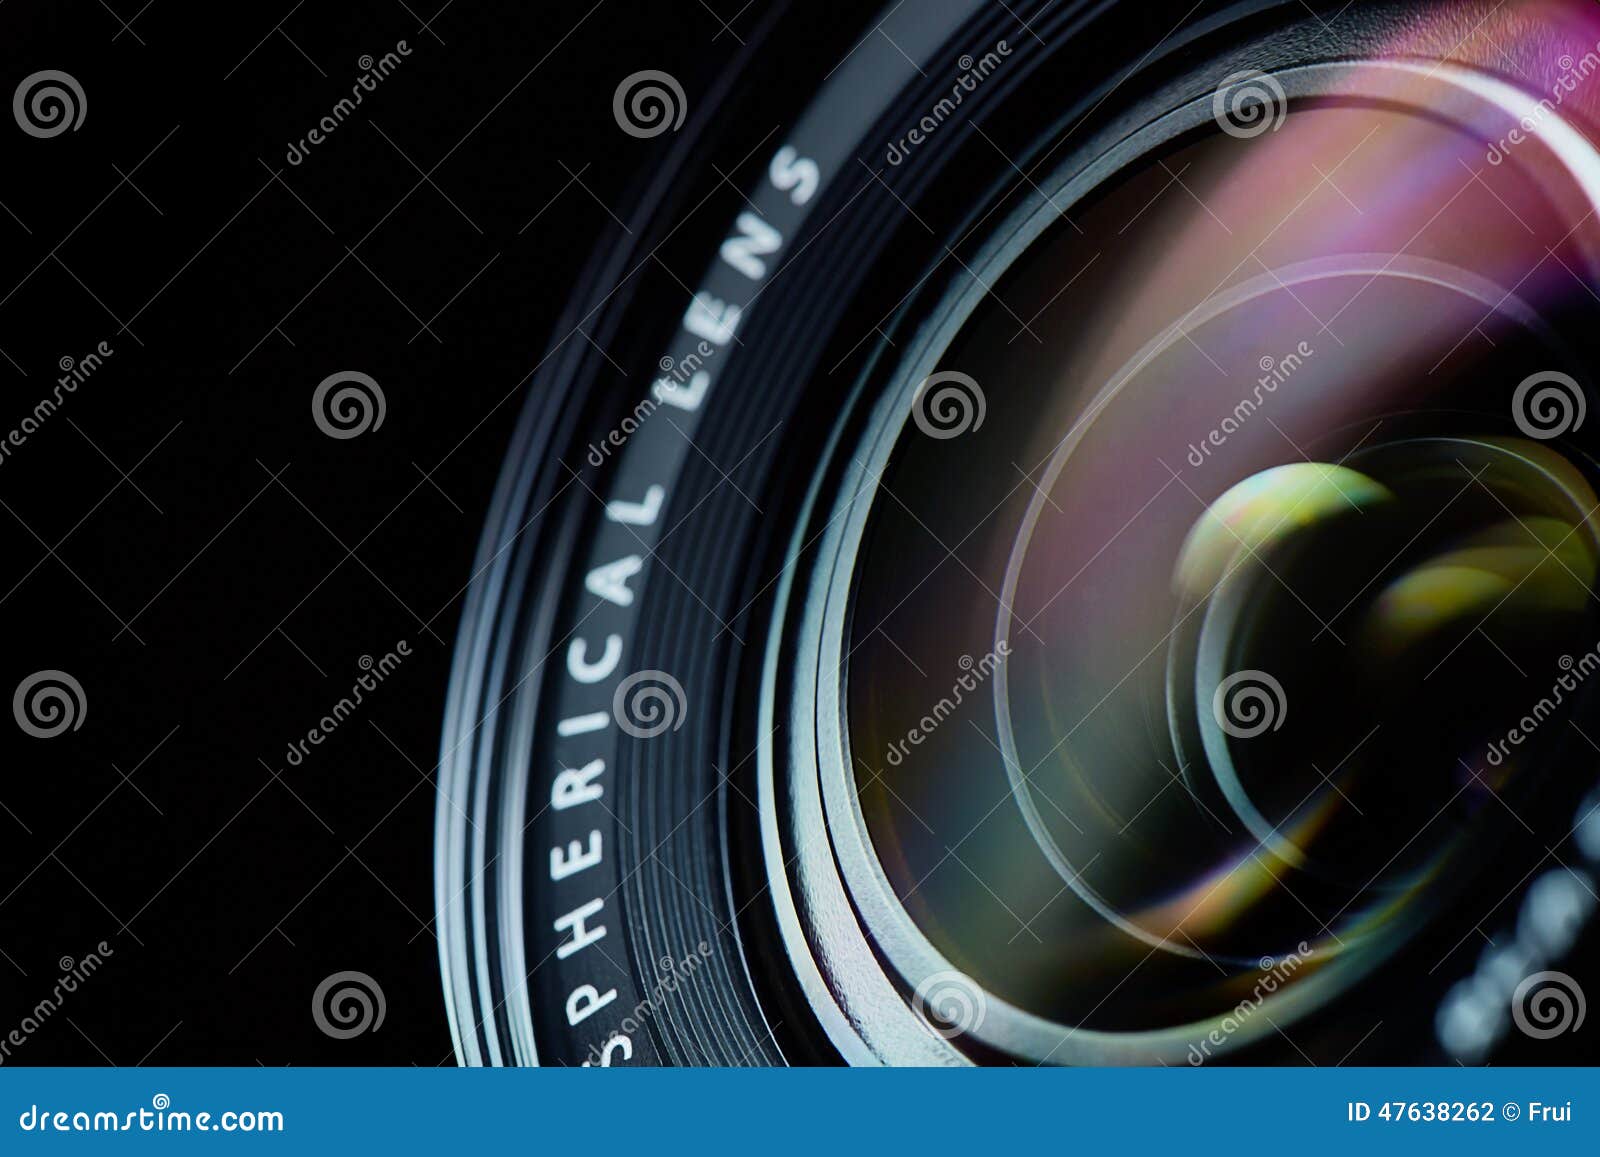 photo camera lens closeup